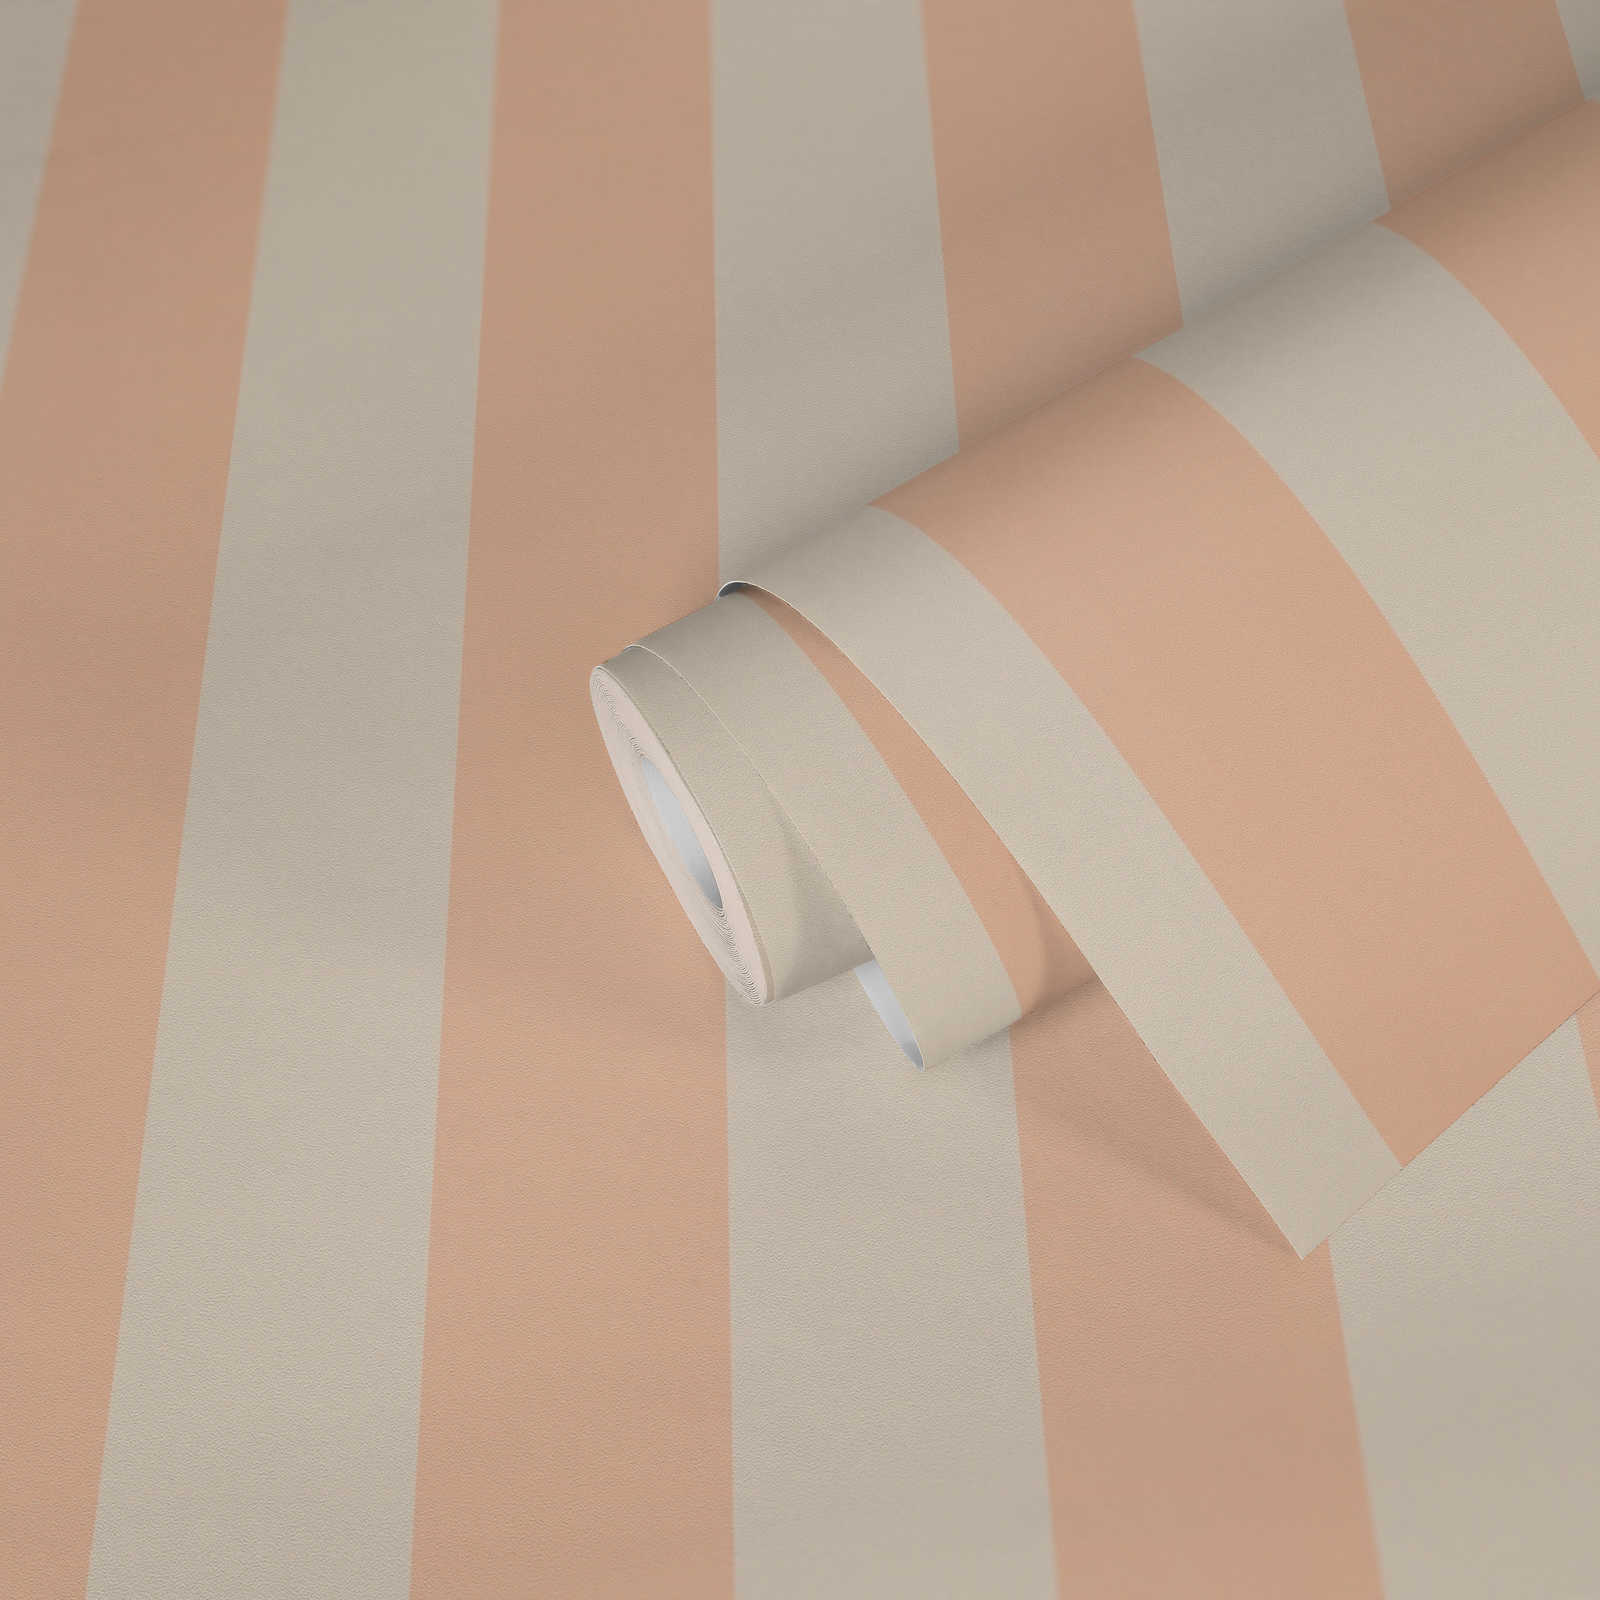             Carta da parati in tessuto non tessuto con strisce a blocchi in tonalità tenui - crema, rosa
        